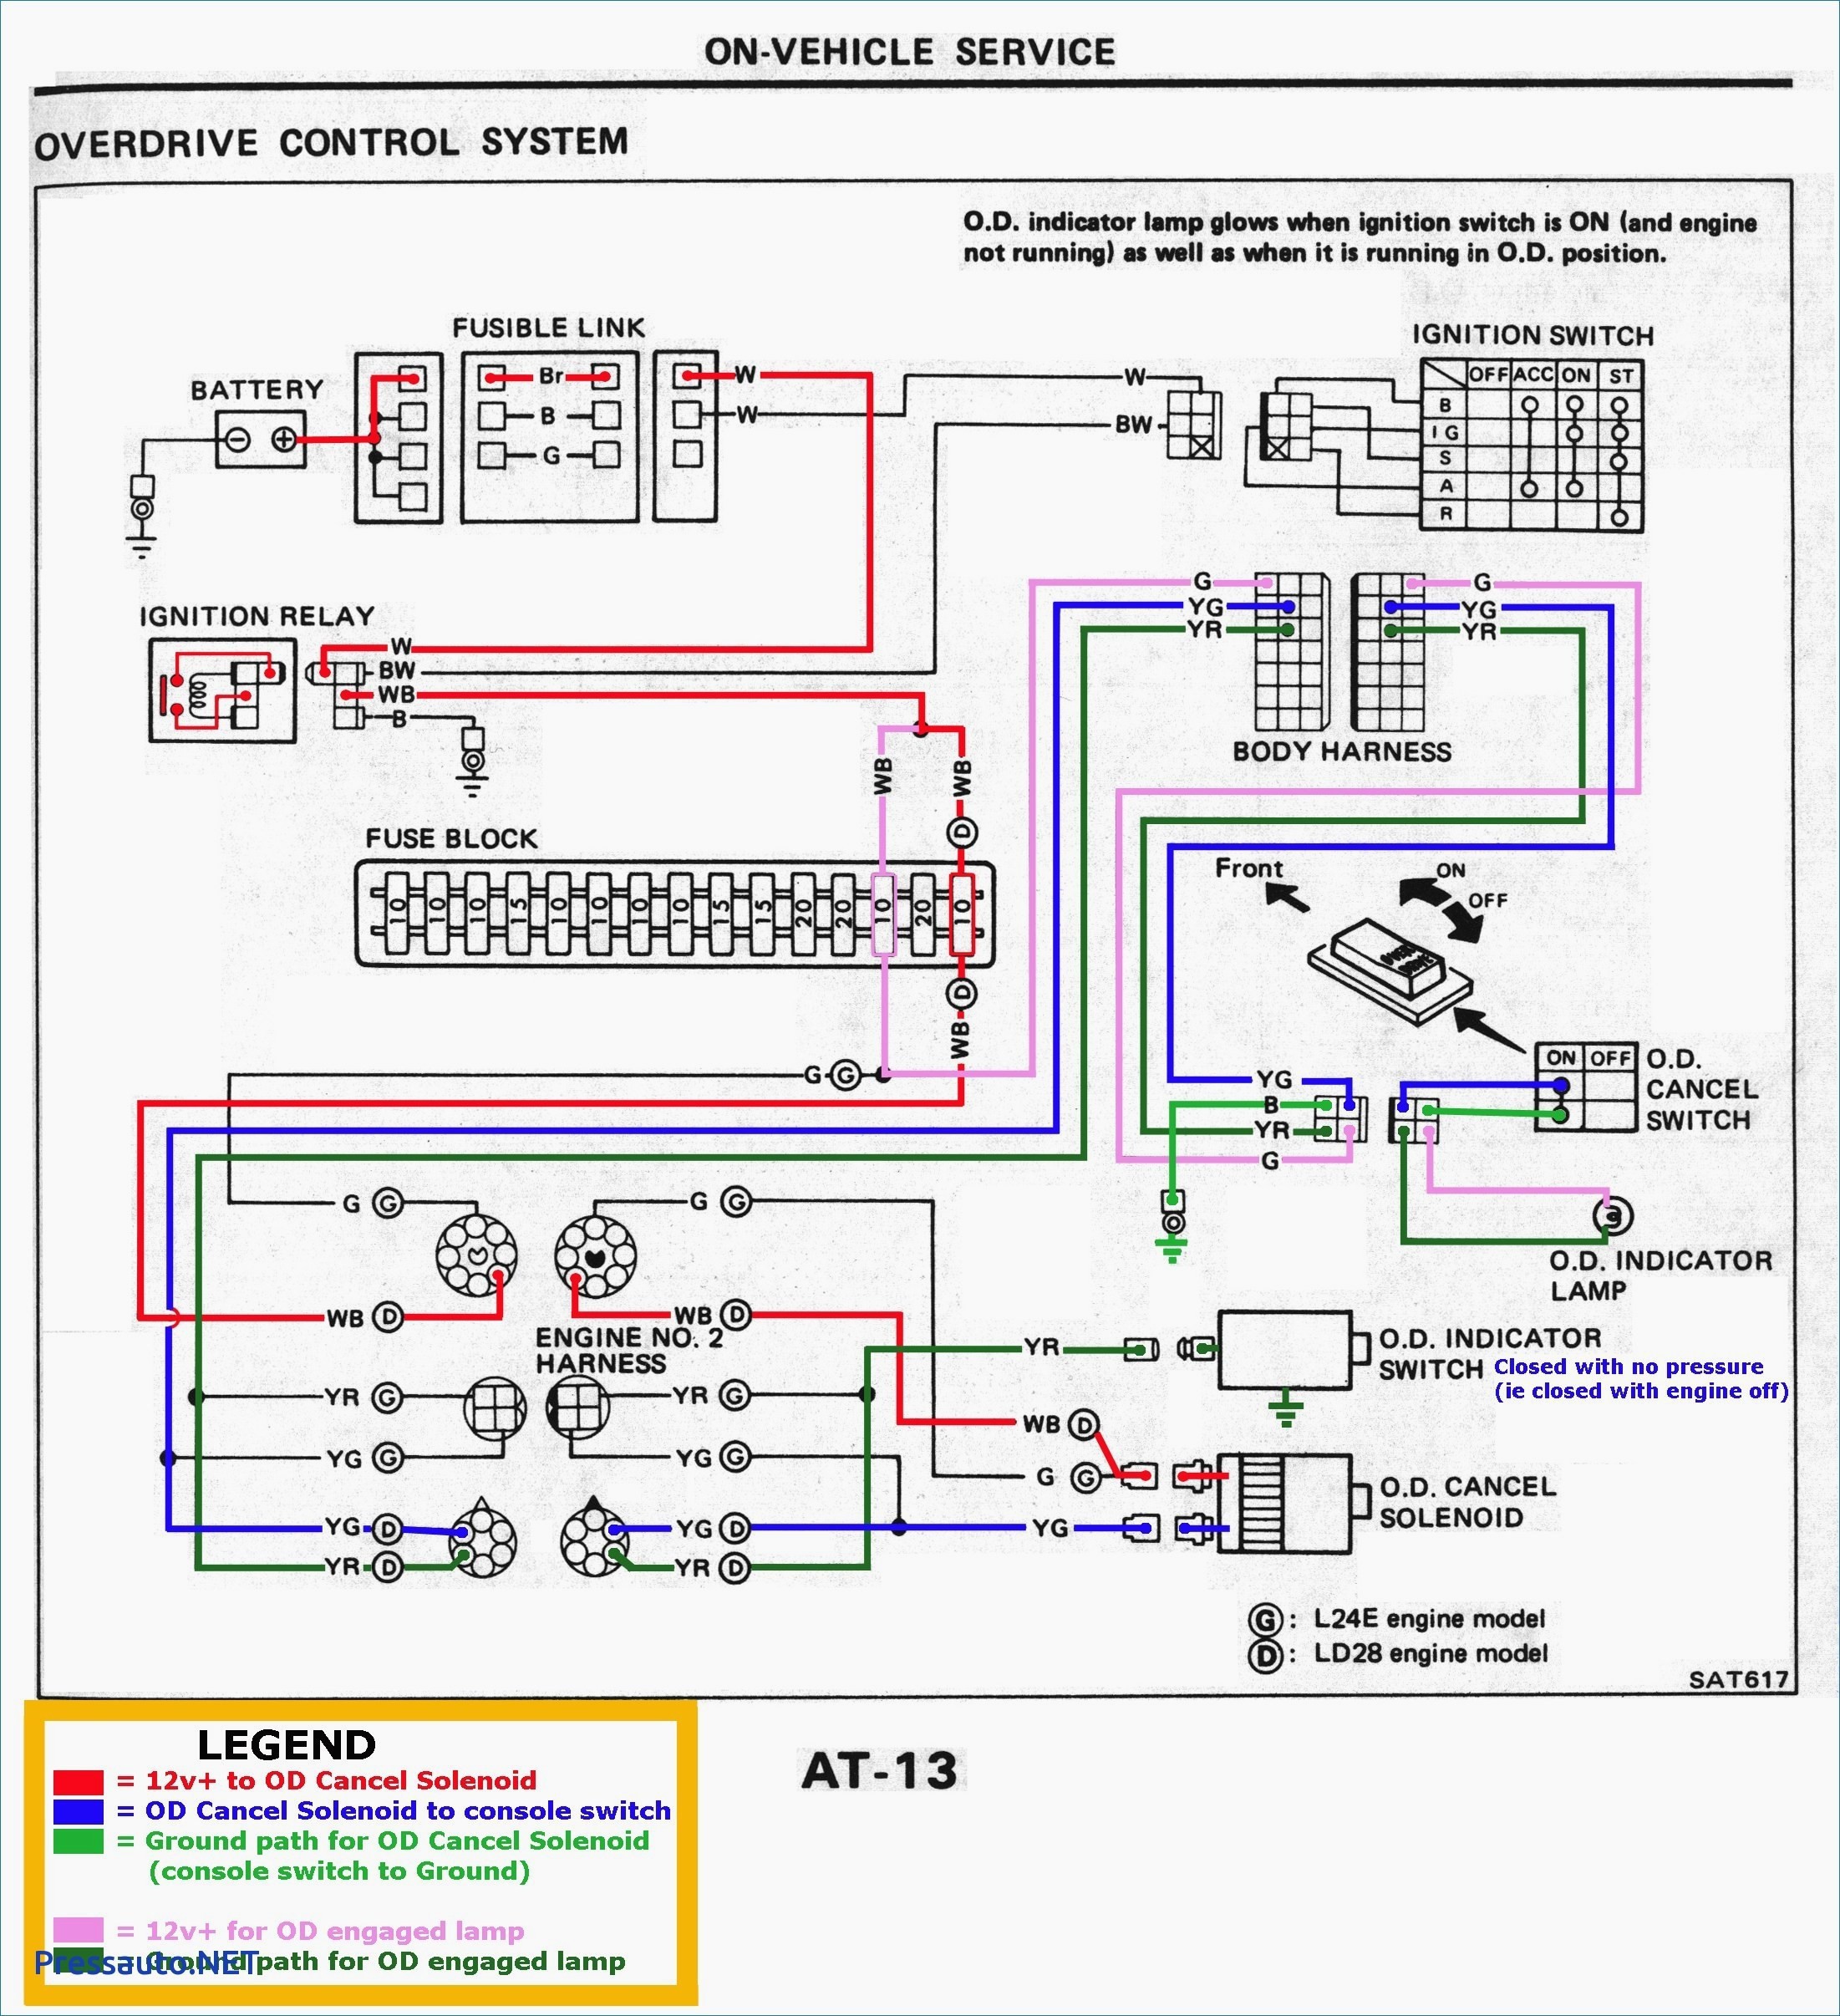 08 Silverado Radio Wiring Diagram 2018 2006 Ford Expedition Wiring Diagram 0d – Wiring Diagram